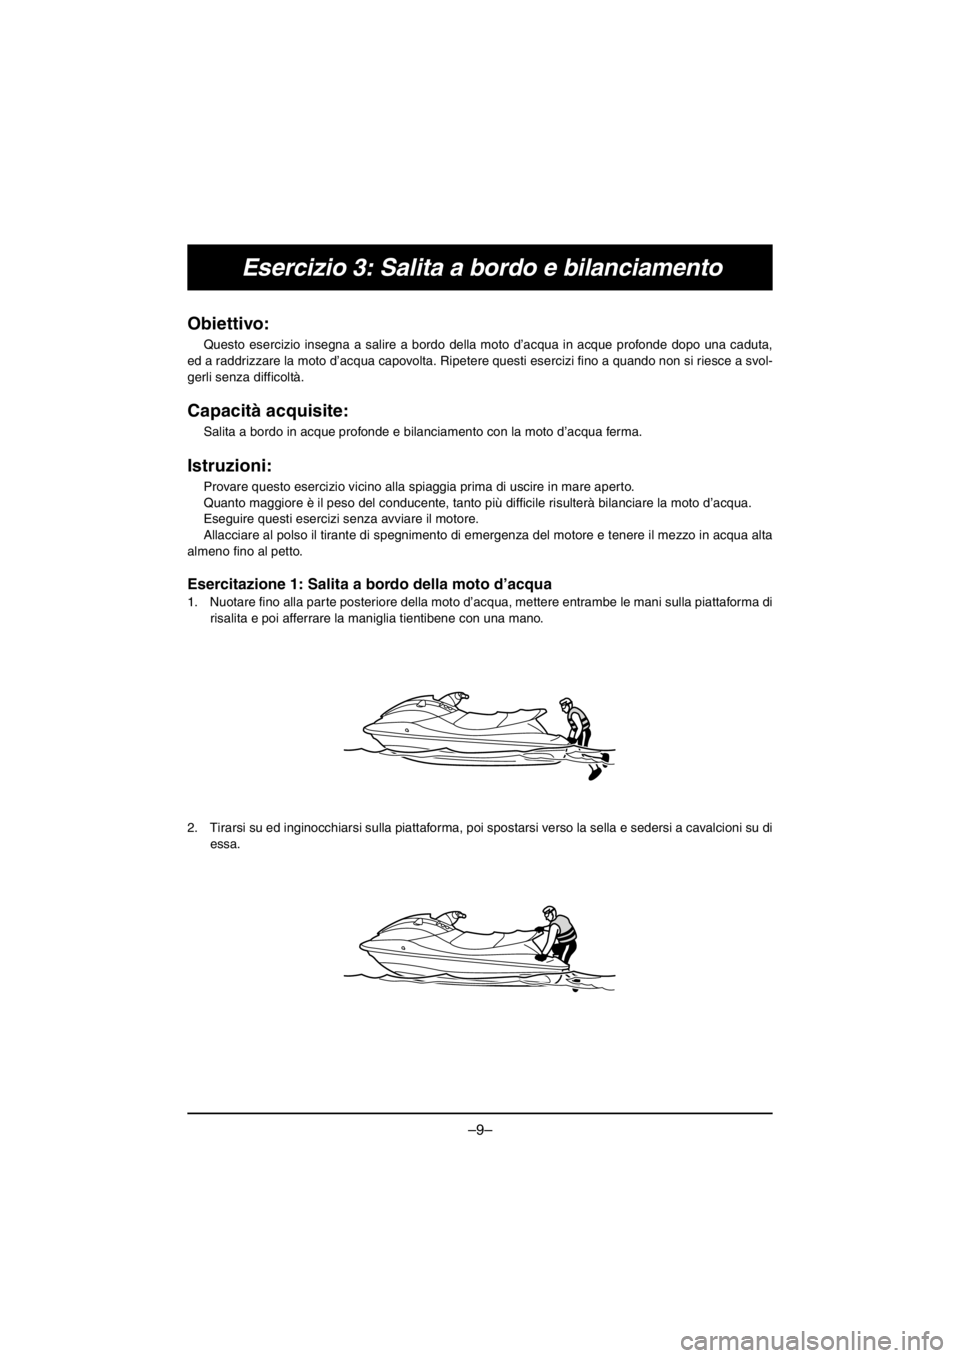 YAMAHA V1 2016  Owners Manual –9–
Esercizio 3: Salita a bordo e bilanciamento
Obiettivo: 
Questo esercizio insegna a salire a bordo della moto d’acqua in acque profonde dopo una caduta,
ed a raddrizzare la moto d’acqua cap